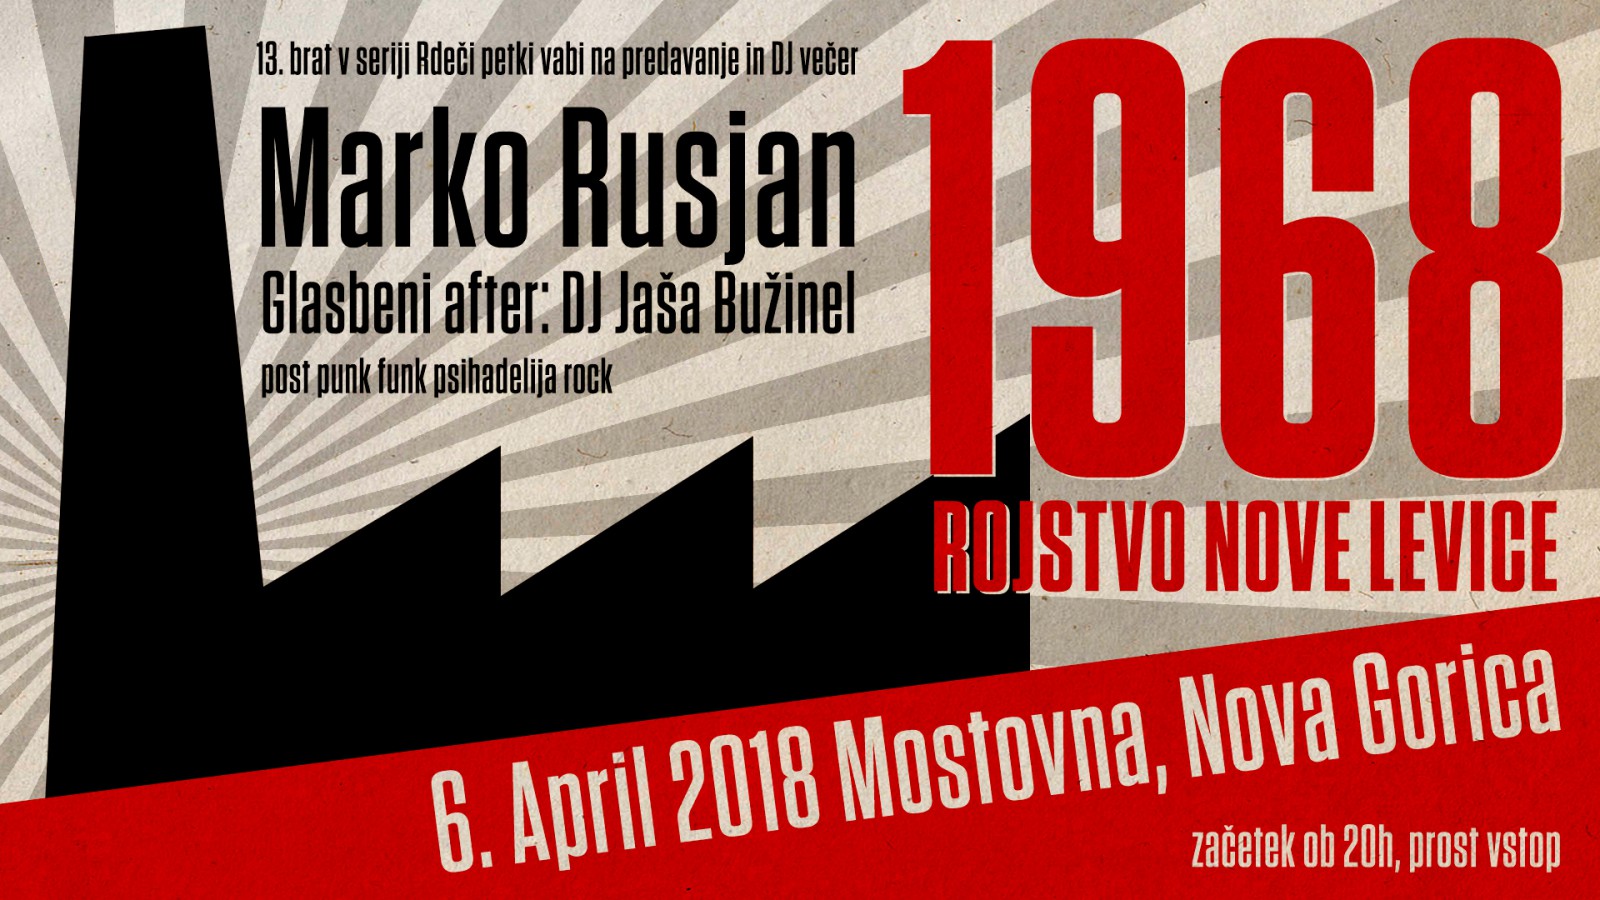 Marko Rusjan - 1968: Rojstvo nove levice z glasbenim afterjem